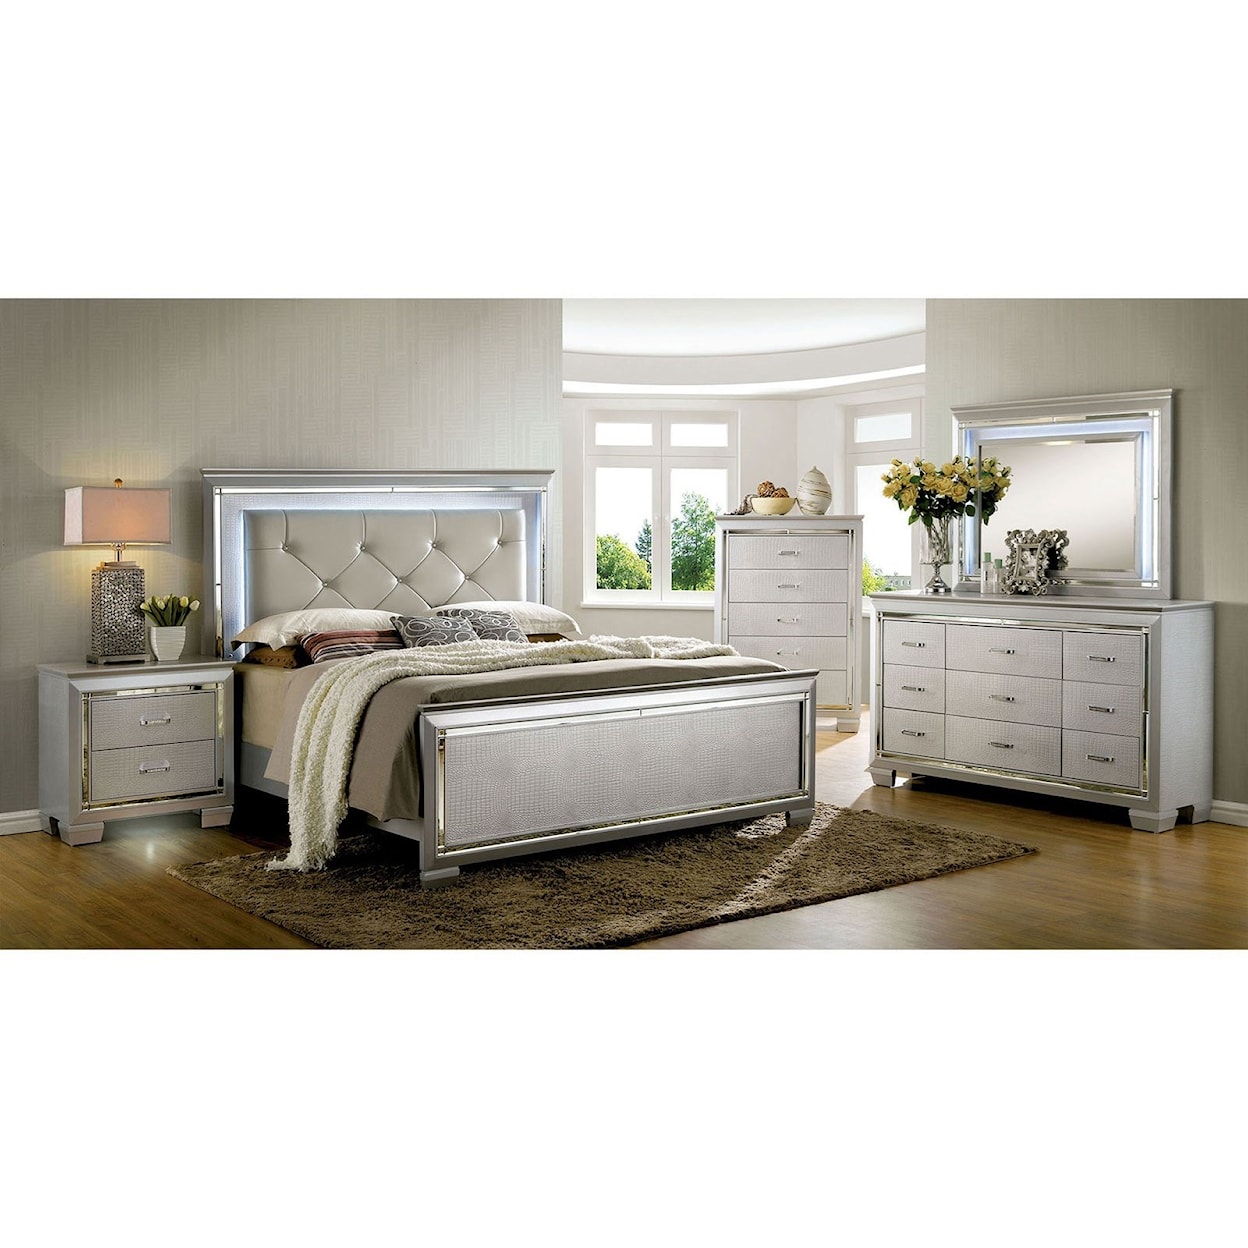 Furniture of America Bellanova Queen Bedroom Group